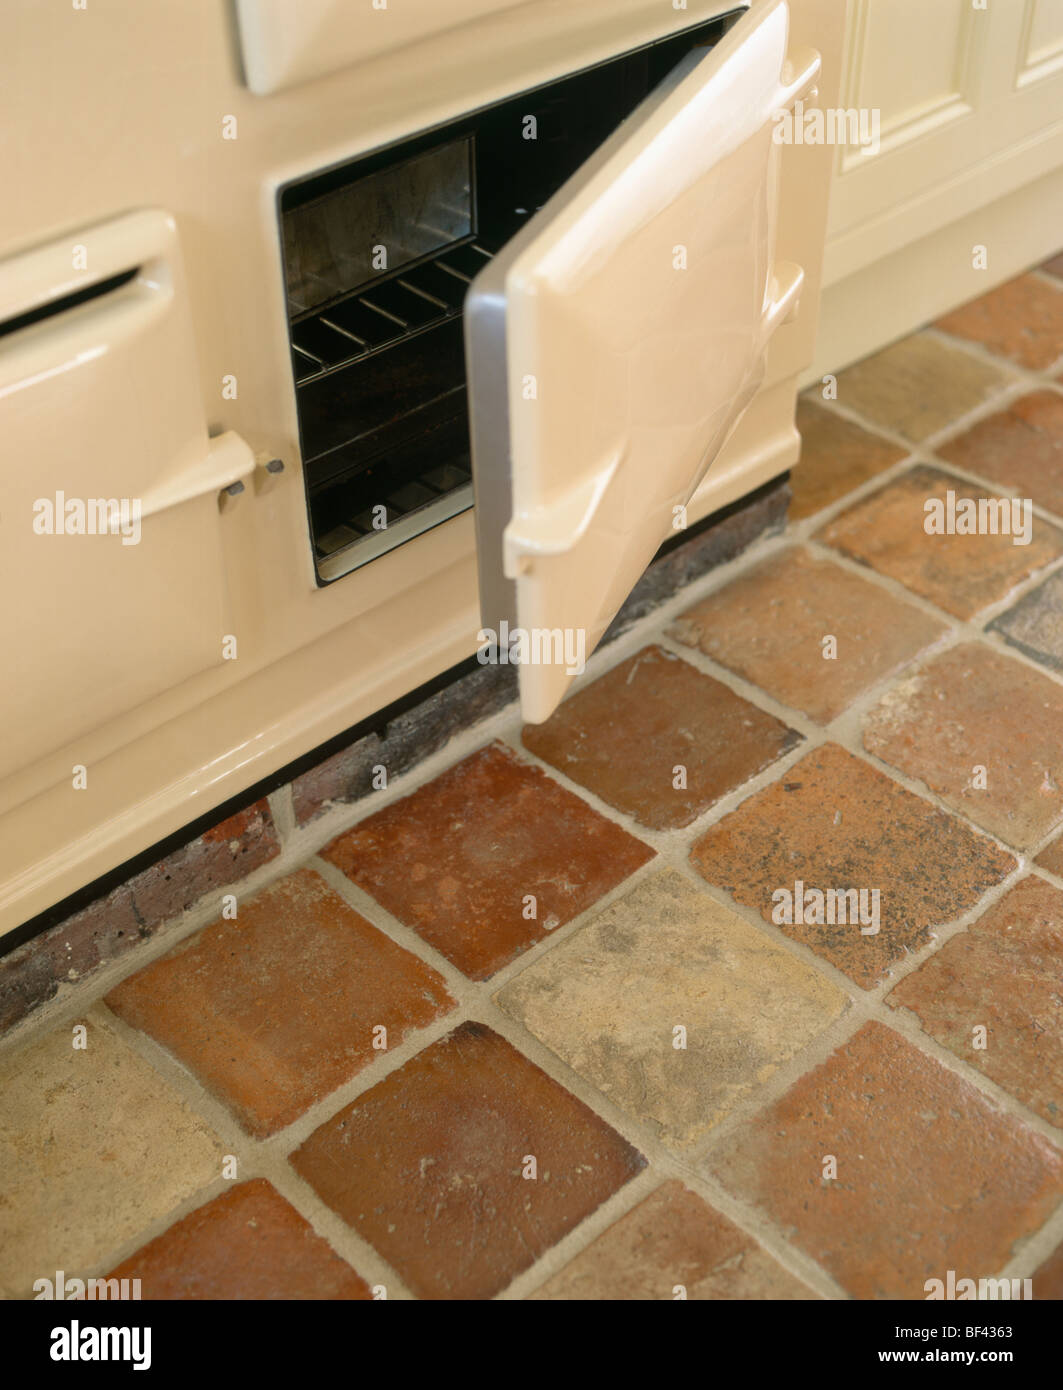 Close-up of cream Aga oven with open door above terracotta floor tiles Stock Photo